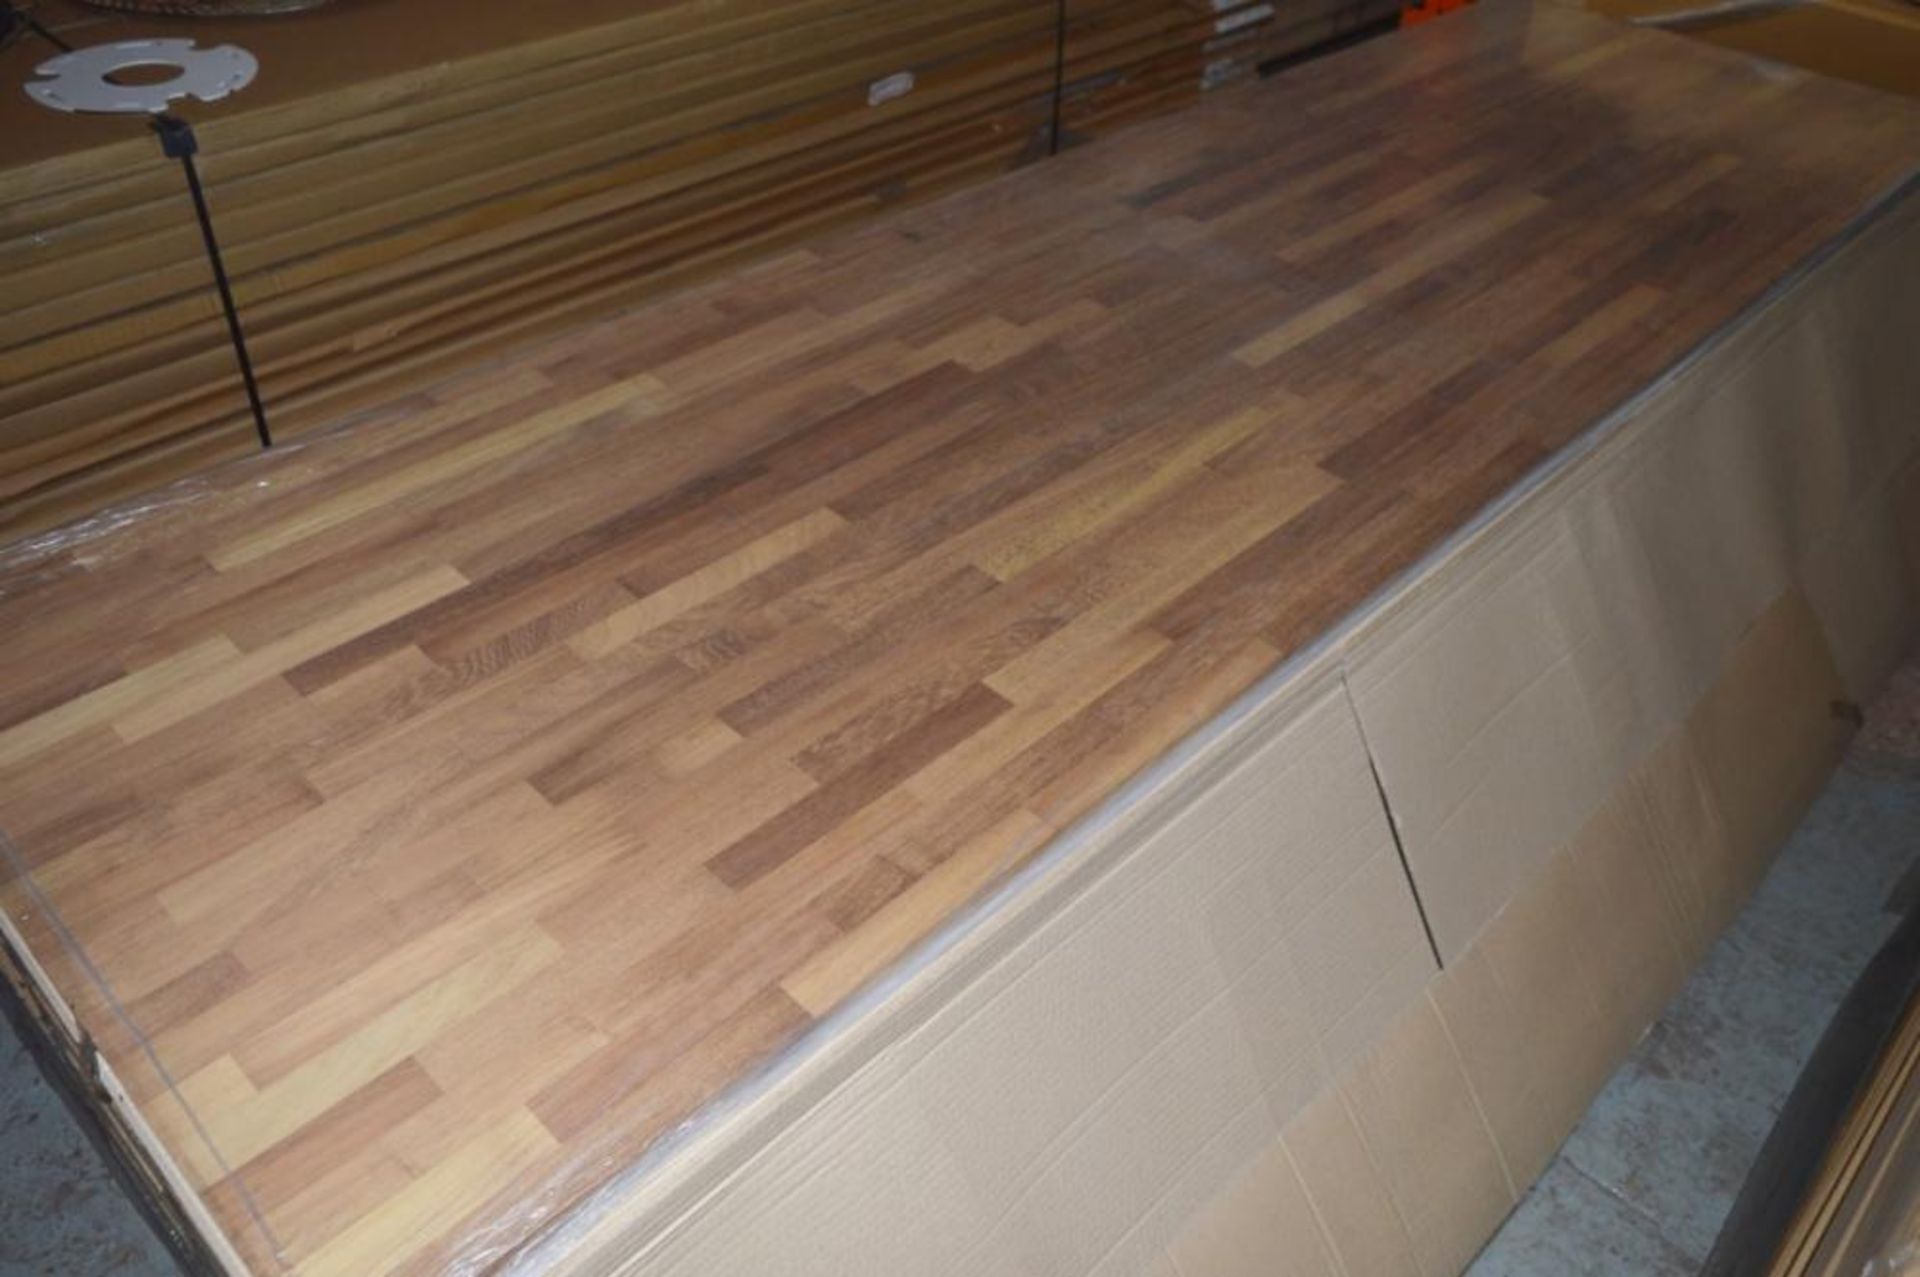 1 x Solid Wood Kitchen Worktop - IROKO - Iroko Blockwood Kitchen Worktop - Size: 3000 x 900 x 32mm - - Image 4 of 4